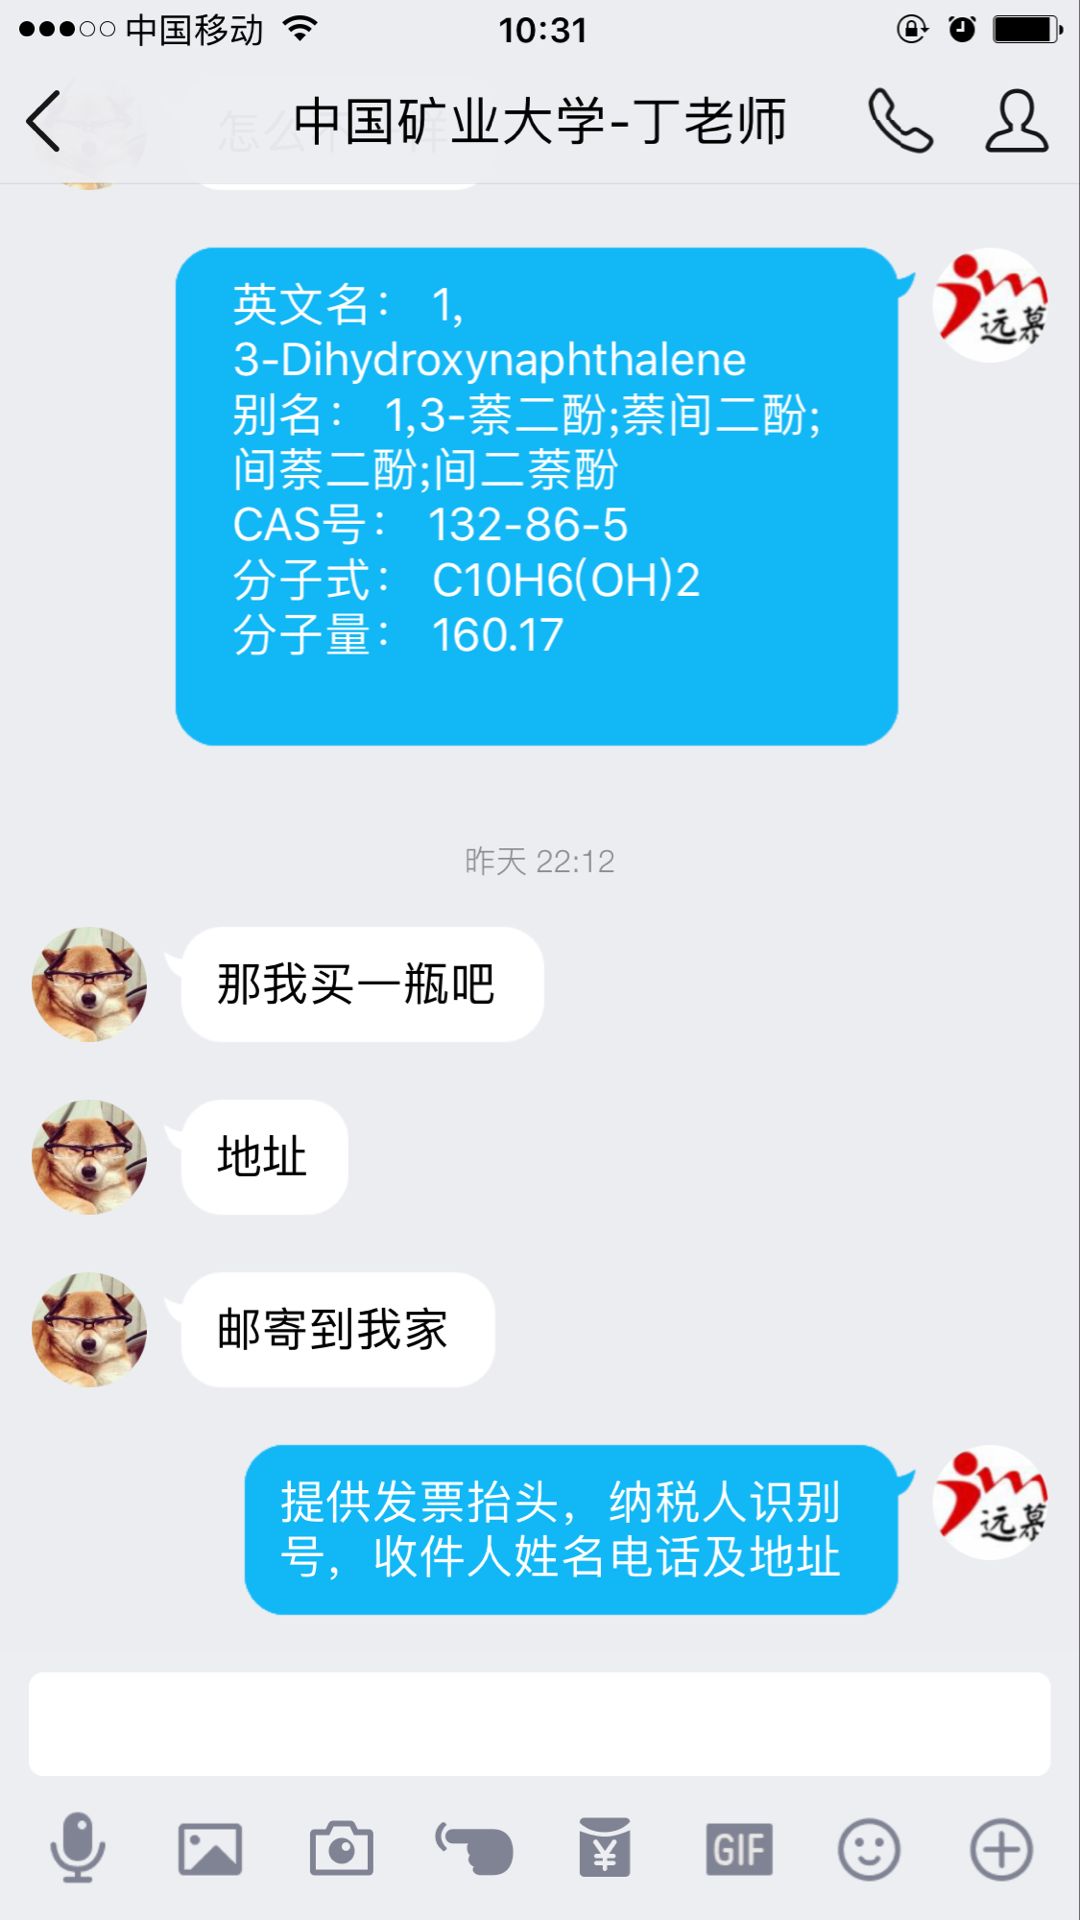 中国矿业大学丁老师在我公司成功订购上海远慕CAS:132-86-5间萘二酚